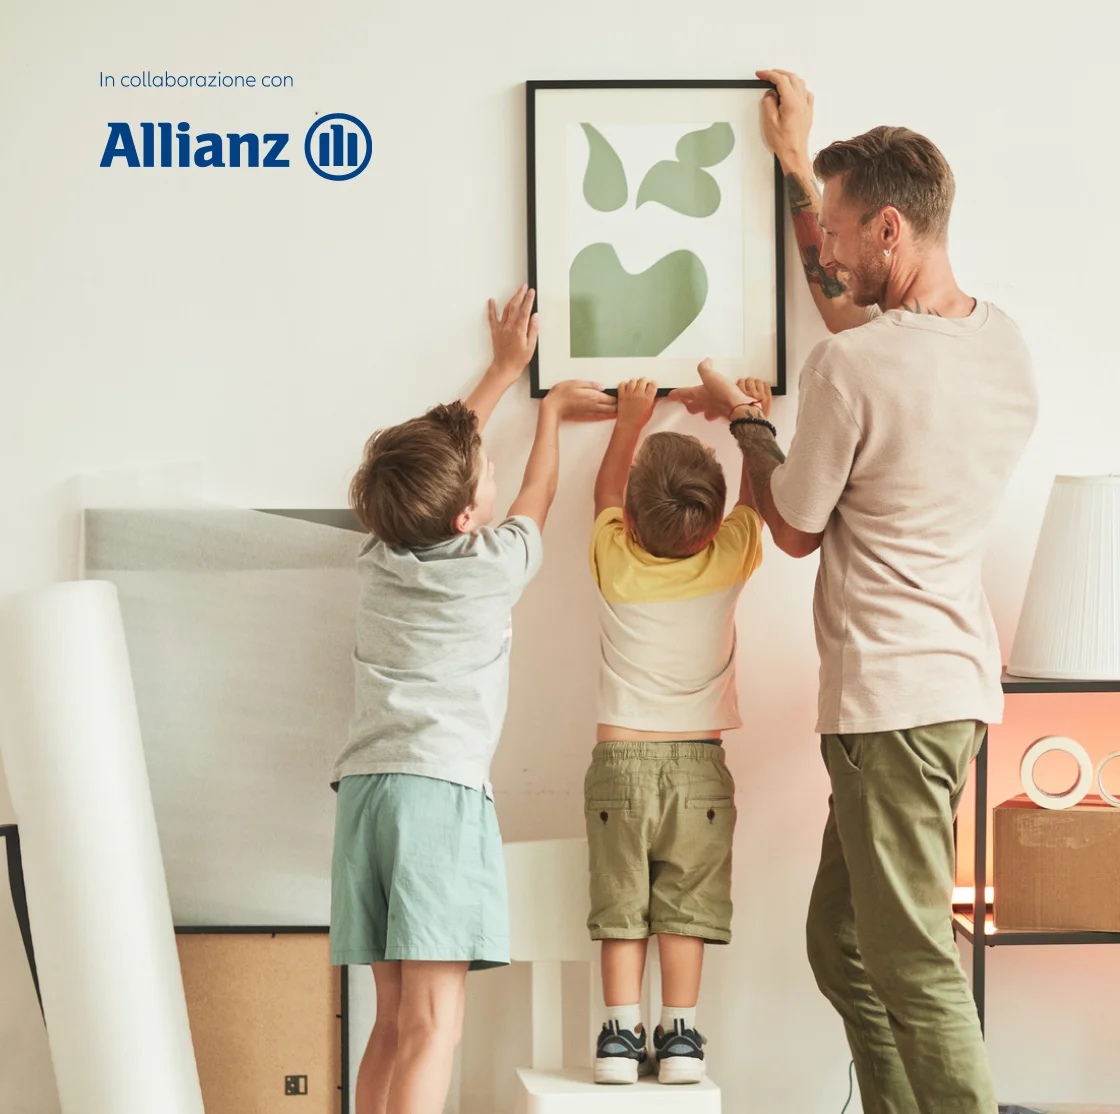 Scegliere Life5 in collaborazione con Allianz significa assicurare la continuità e la stabilità finanziaria